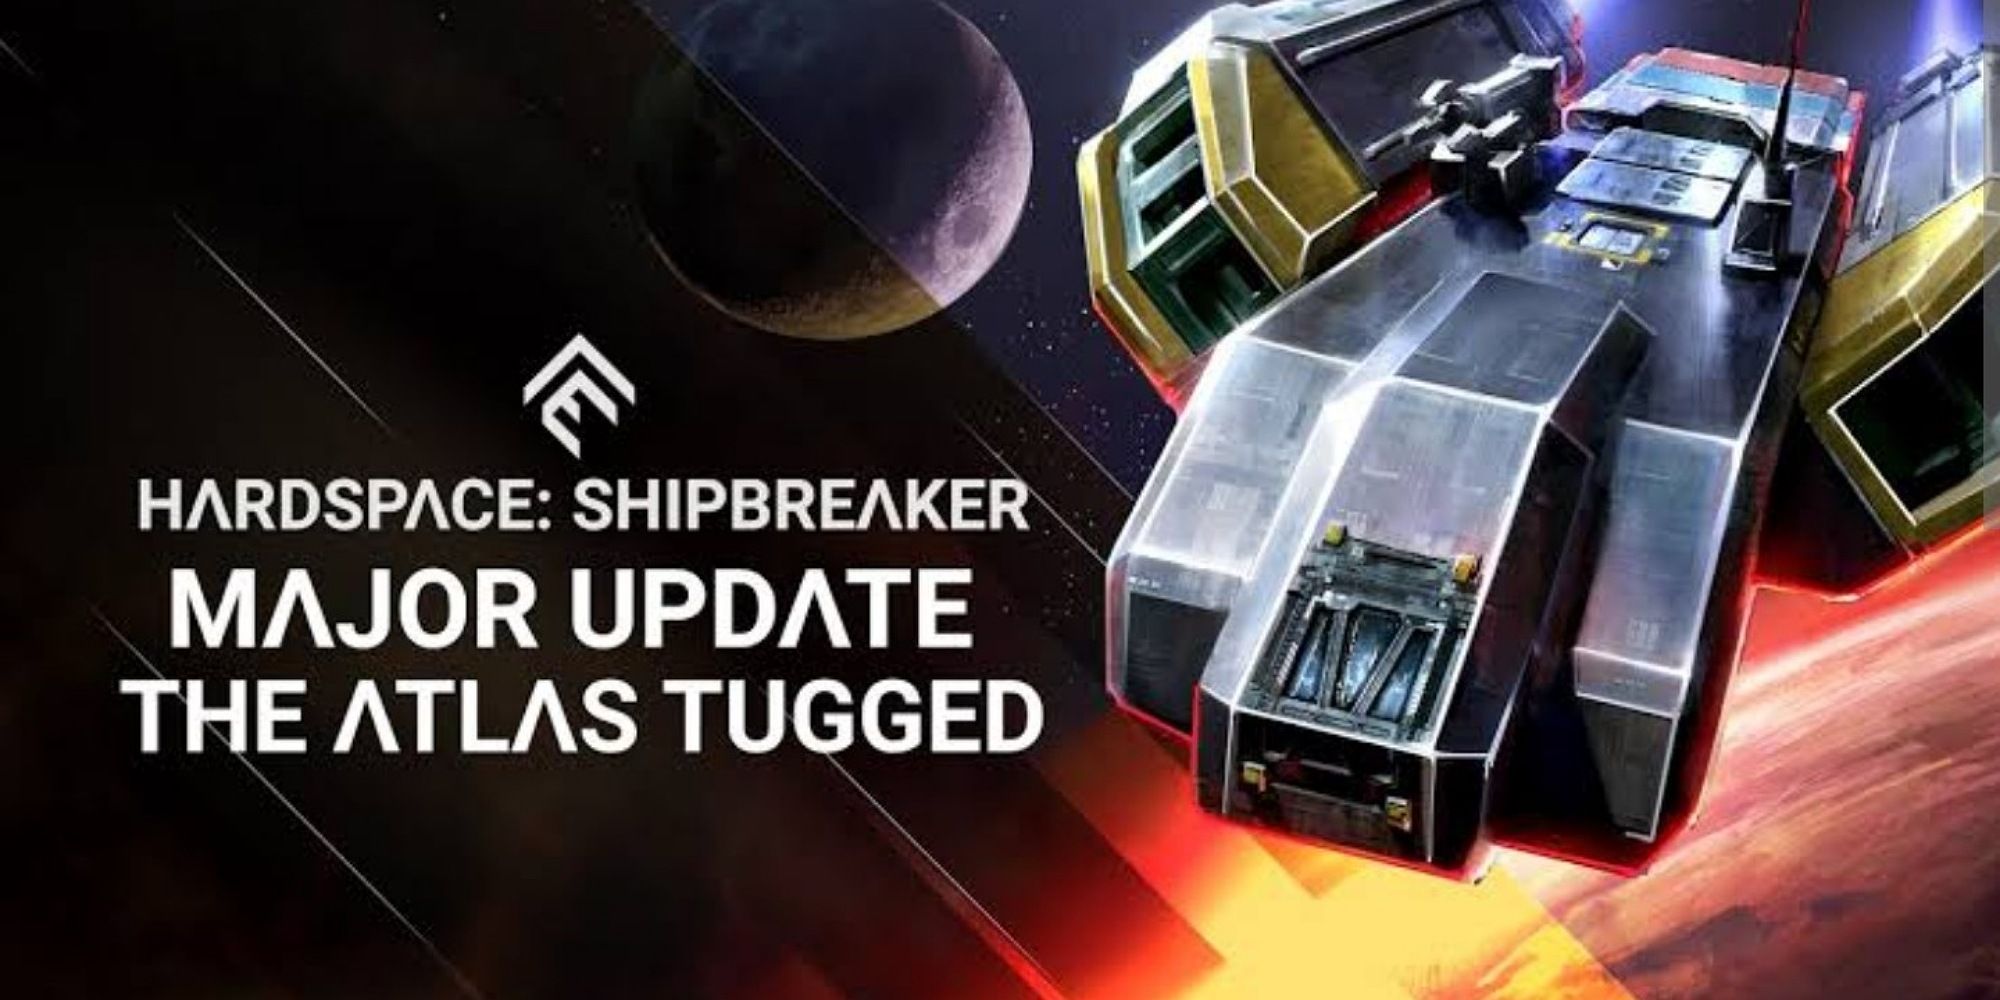 atlas tugged hardship spacebreaker